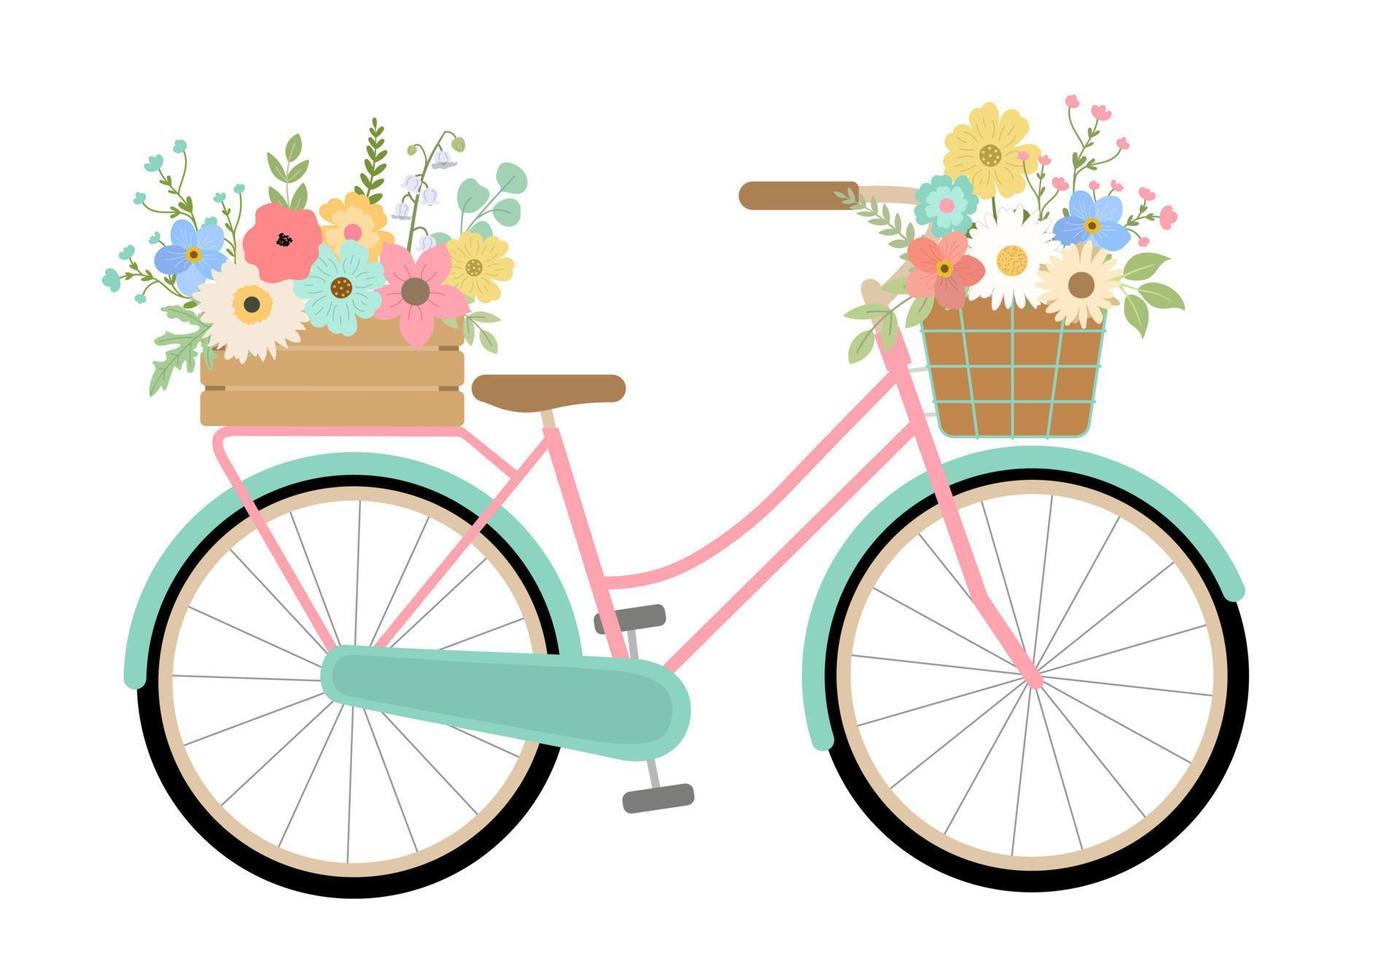 bicicleta turquesa floral de primavera dibujada a mano. aislado sobre fondo blanco. ilustración vectorial bicicleta retro con flores de colores en caja y cesta. vector